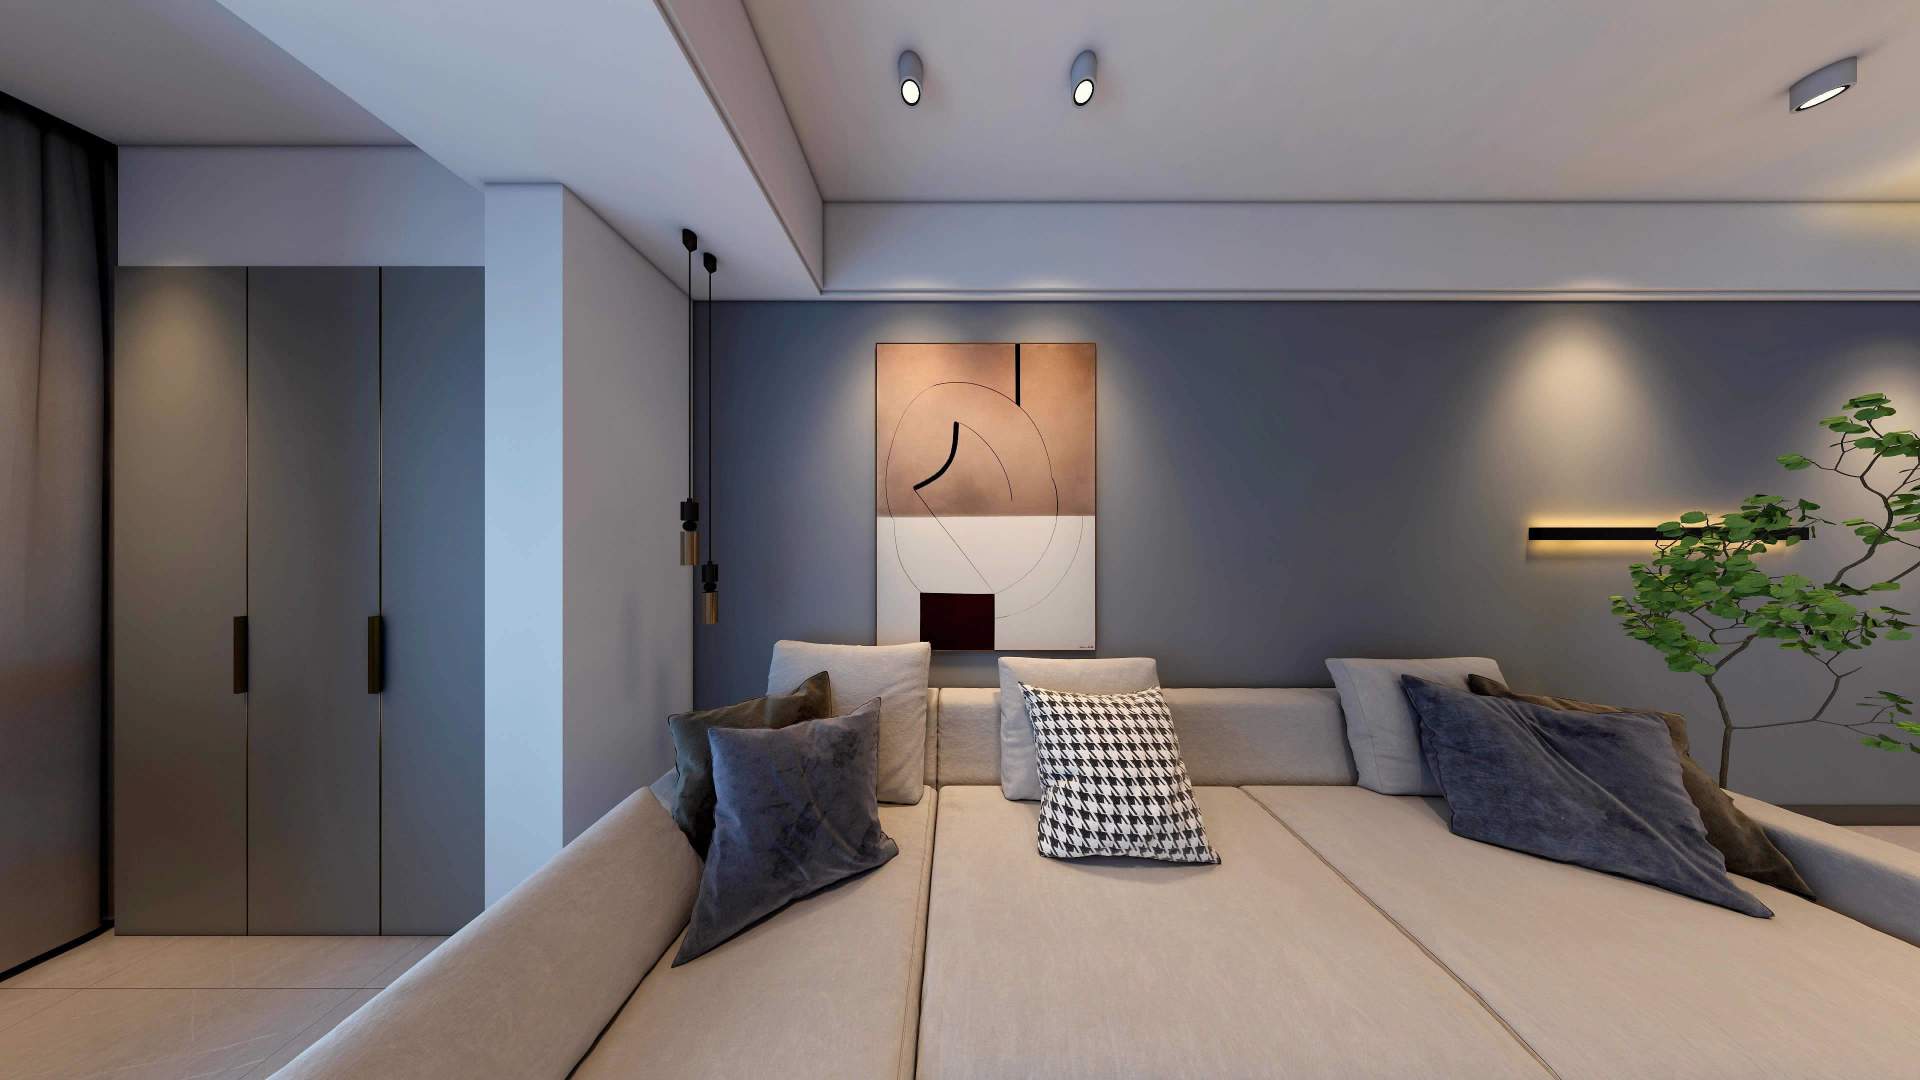 张家界装修案例紫御山水6栋2501室114㎡-现代风格